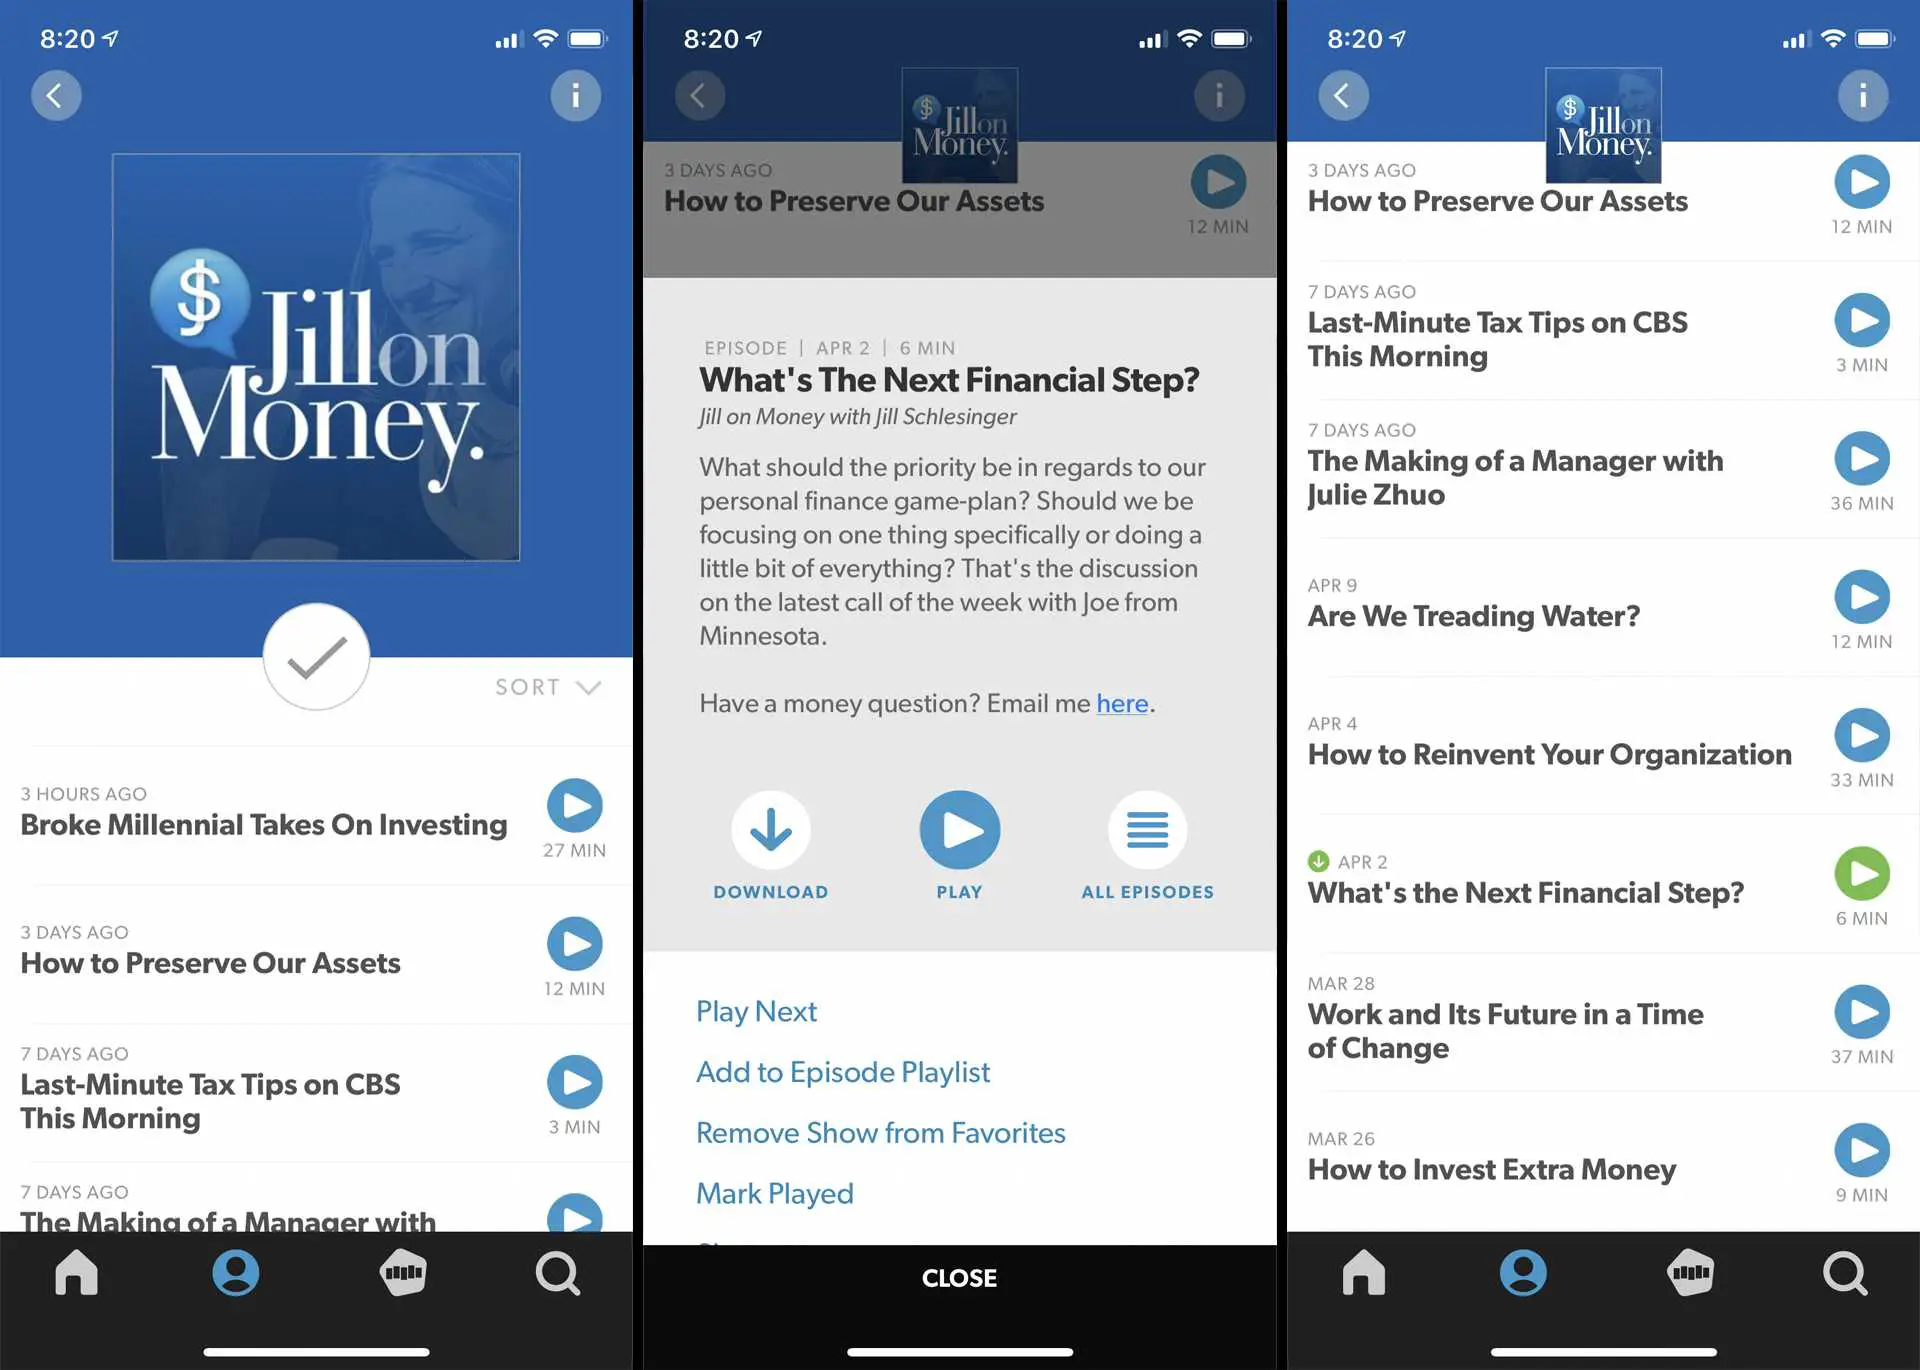 Captura de tela do aplicativo Stitcher para iPhone mostrando o download de um episódio do podcast Jill on Money.